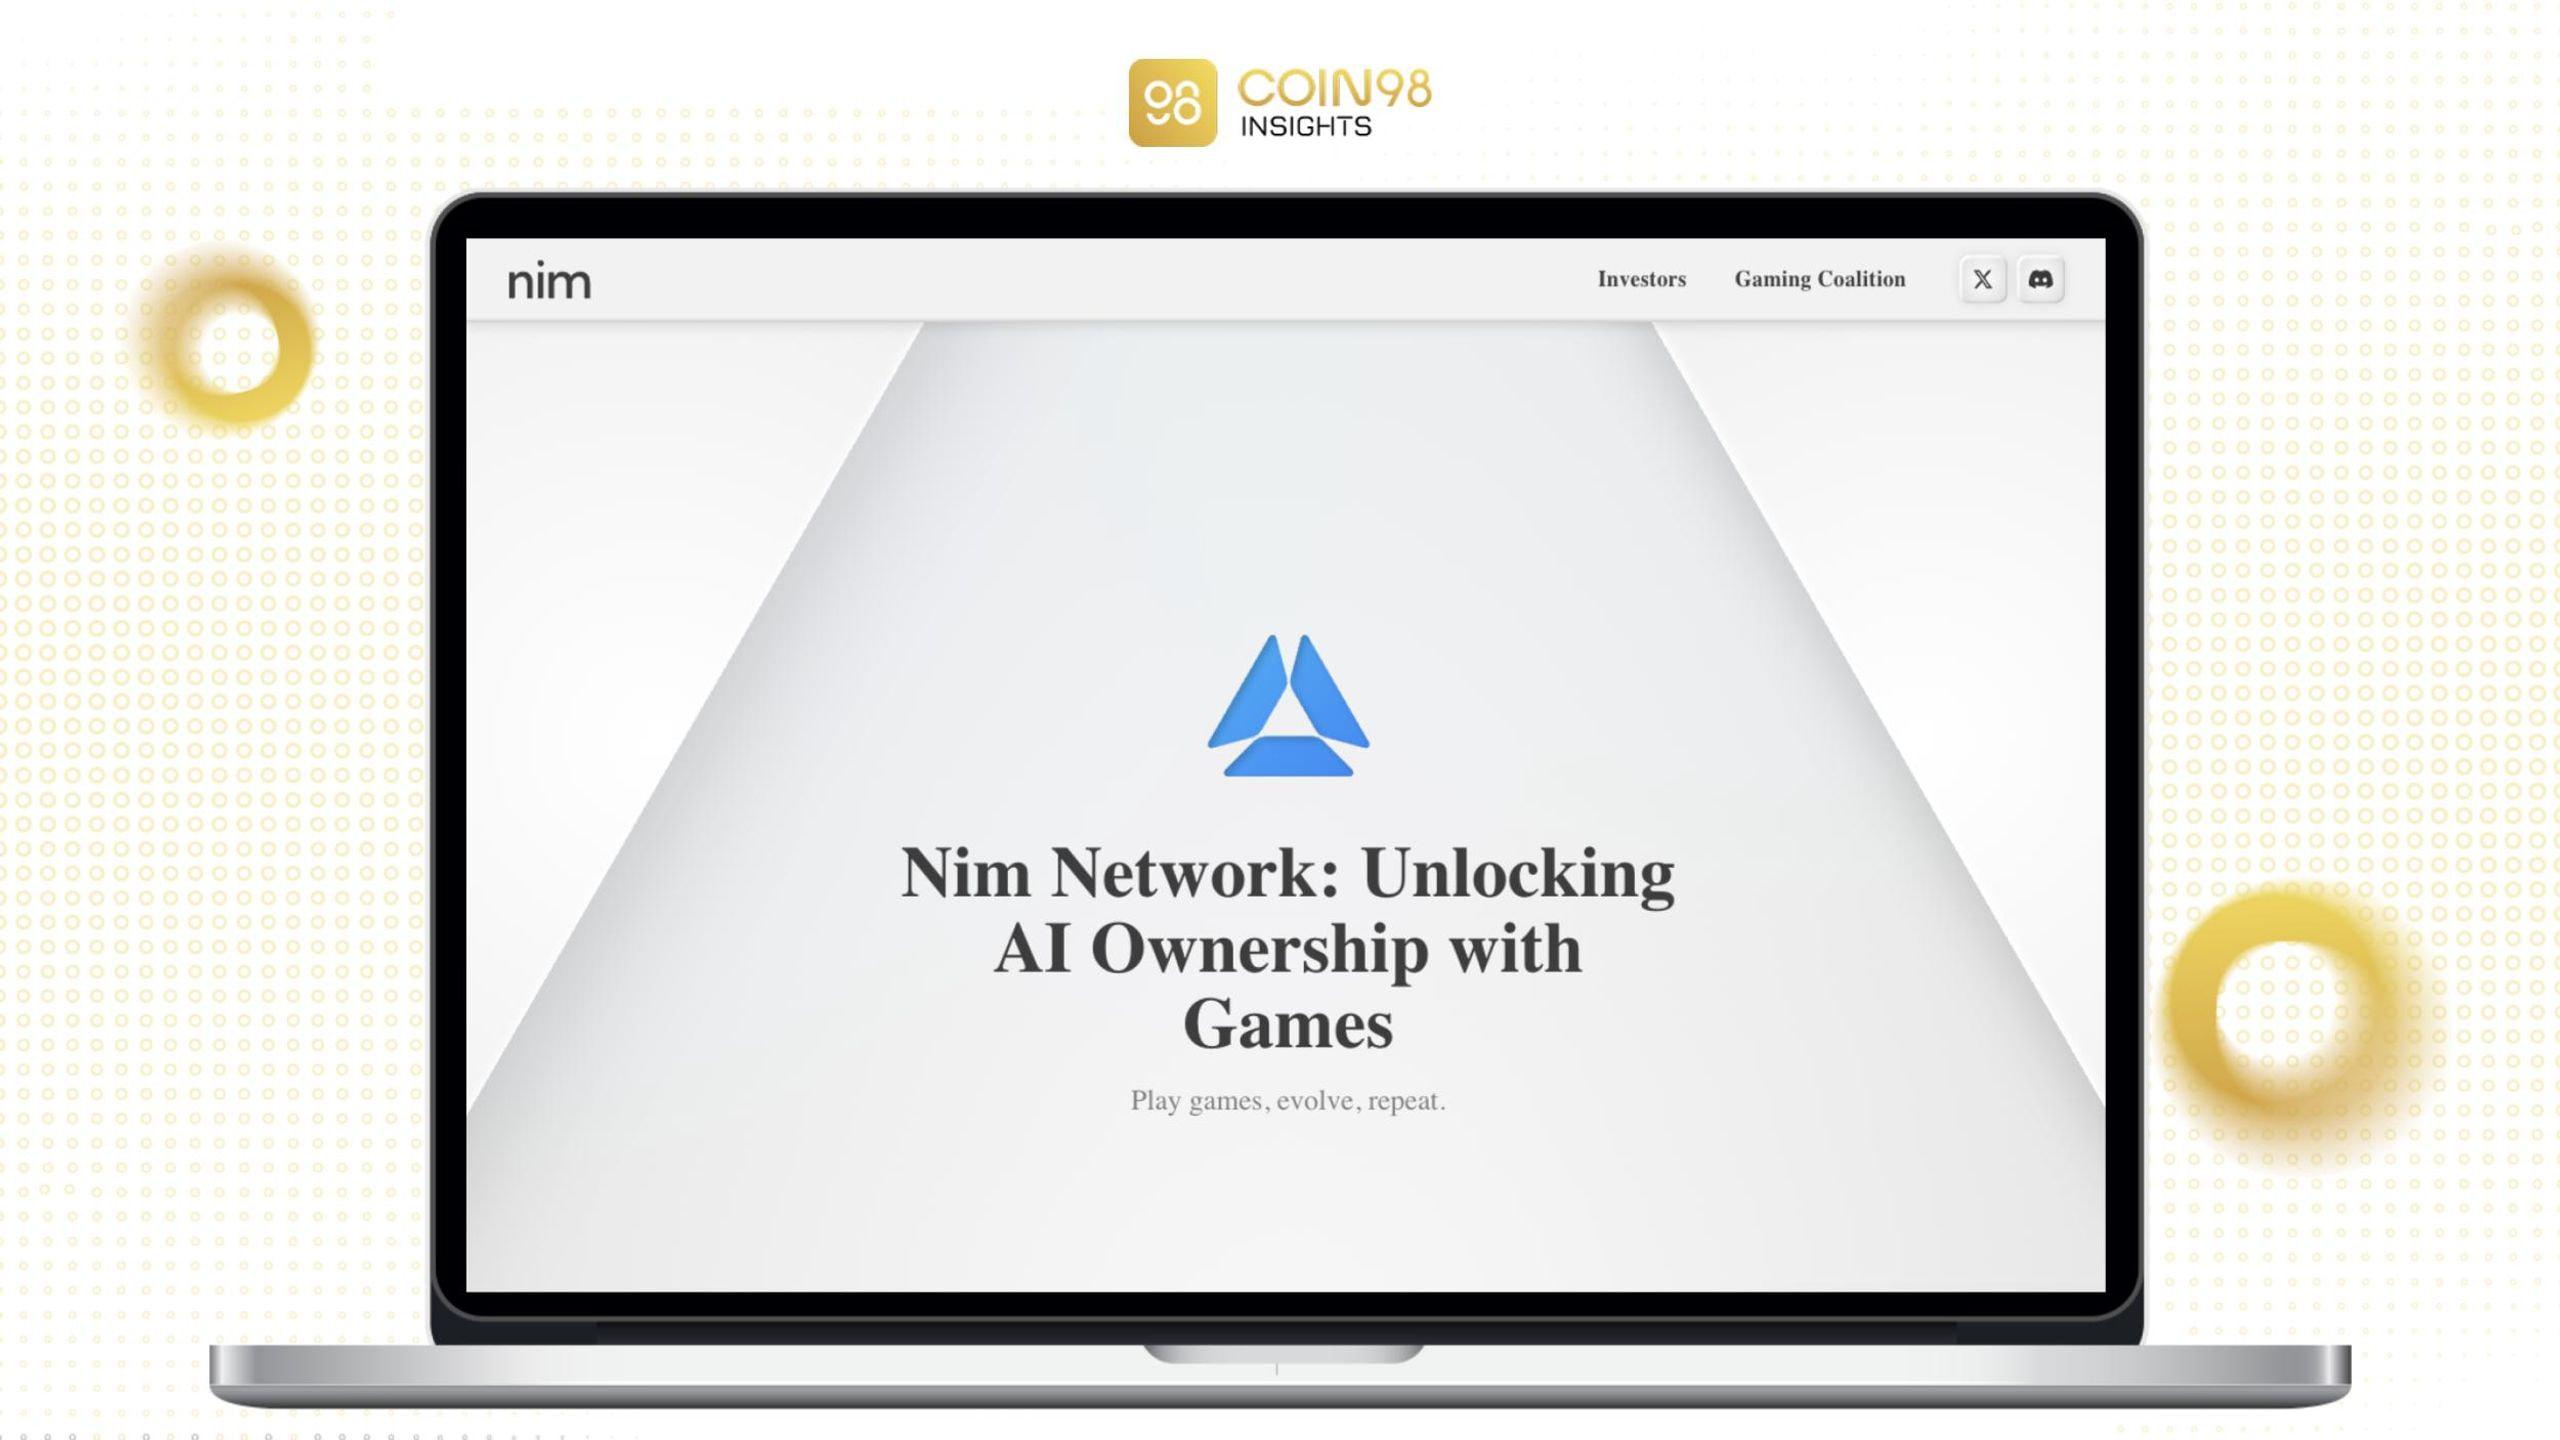 nim network là gì